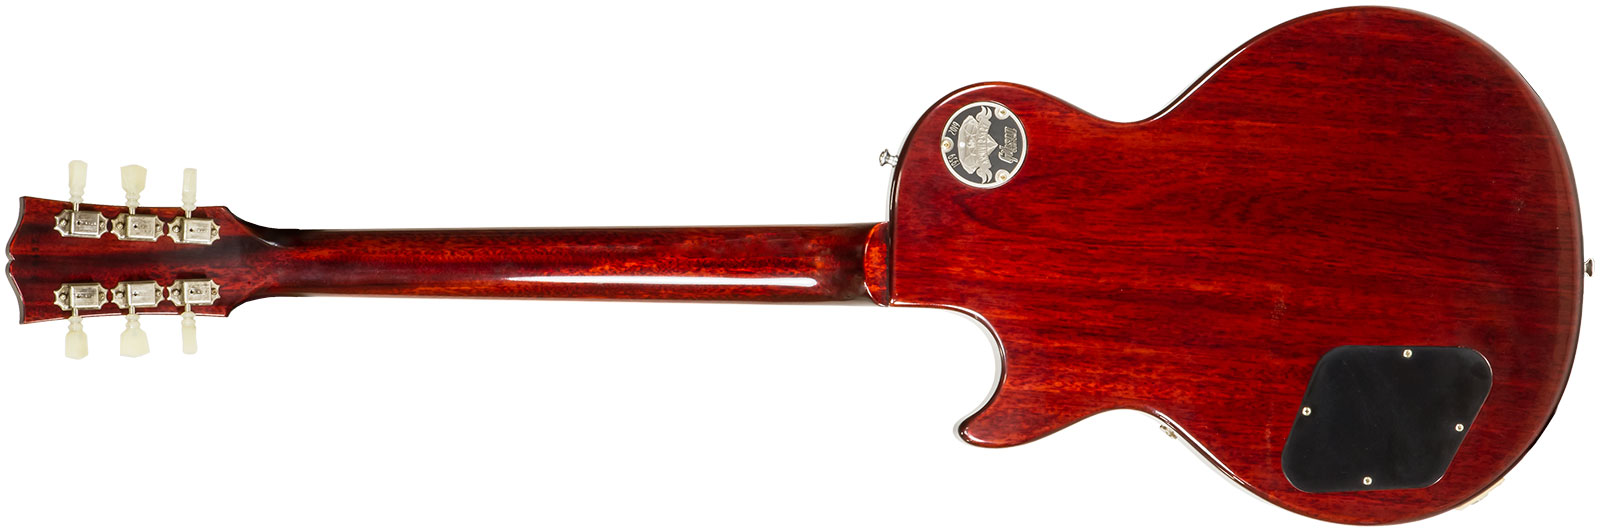 Gibson Custom Shop Les Paul Standard 1960 V2 60th Anniversary 2h Ht Rw #00492 - Vos Tomato Soup Burst - Guitare Électrique Single Cut - Variation 1